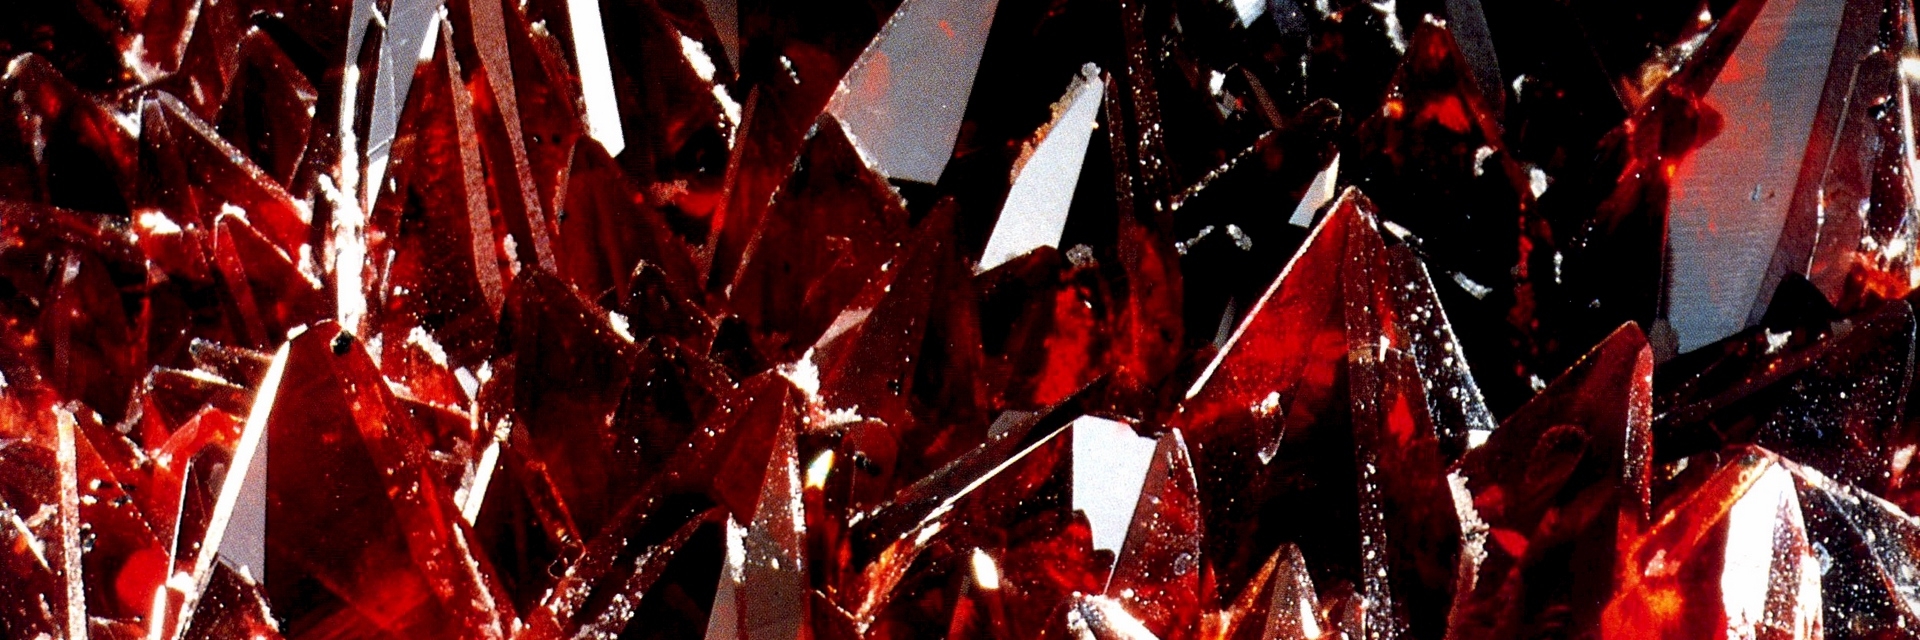 пабг красный кристалл фото 52